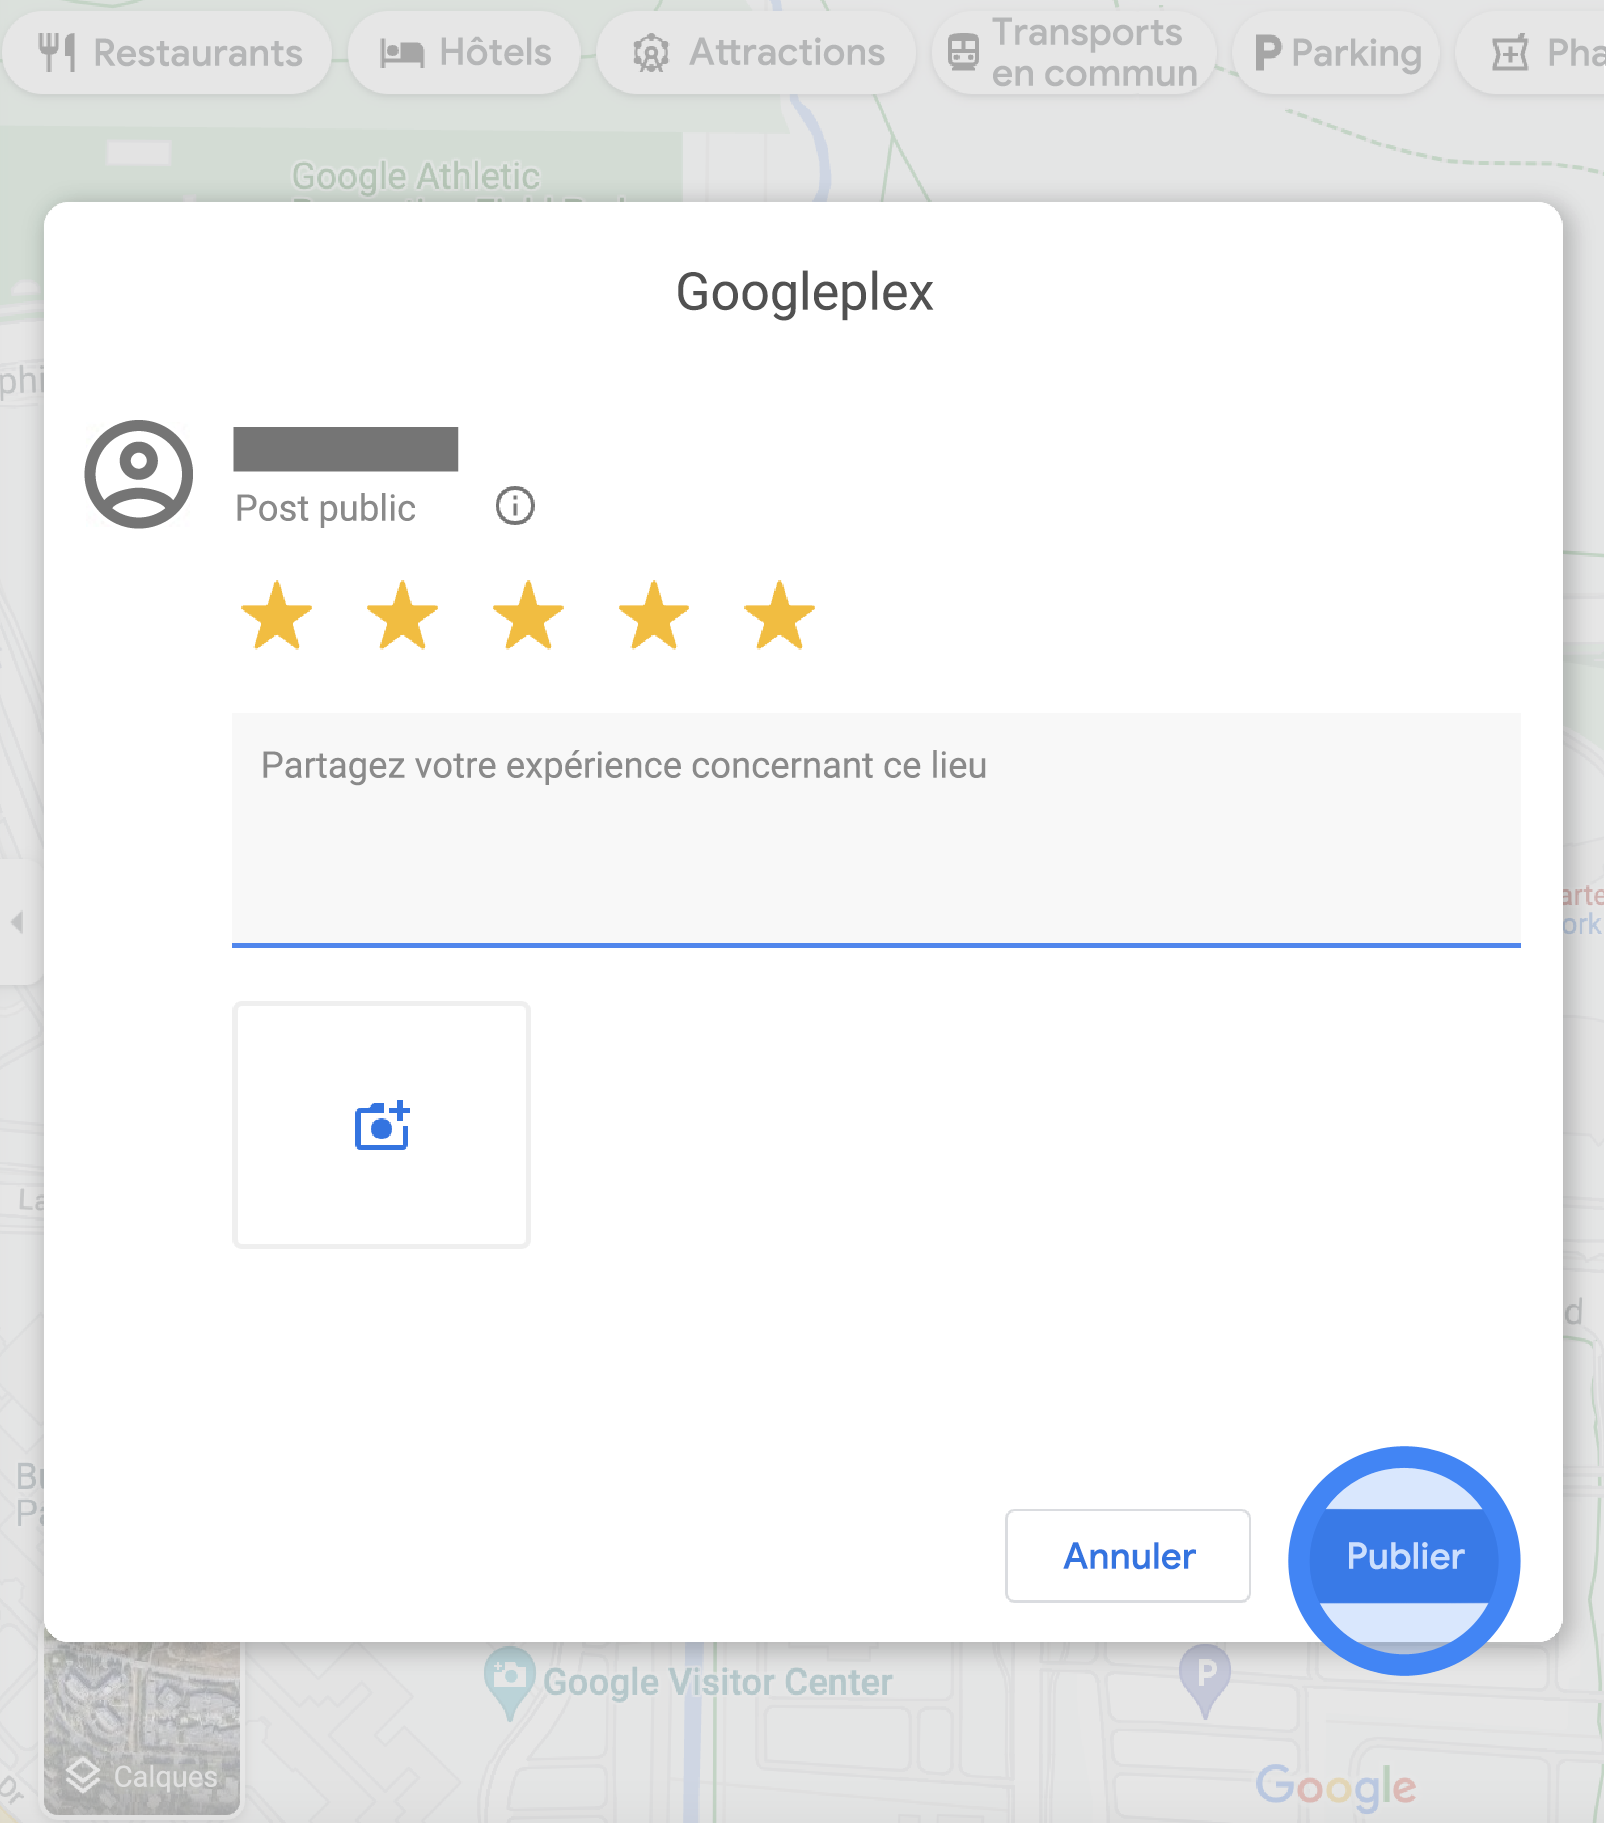 Dans Google Maps, une fenêtre pop-up affiche un formulaire permettant de rédiger un avis sur le Googleplex. Il y a 5 étoiles sélectionnées pour la note, un champ de texte pour rédiger un avis et un bouton avec un appareil photo pour importer des photos. Les boutons "Annuler" et "Publier" se trouvent en bas de la fenêtre pop-up.